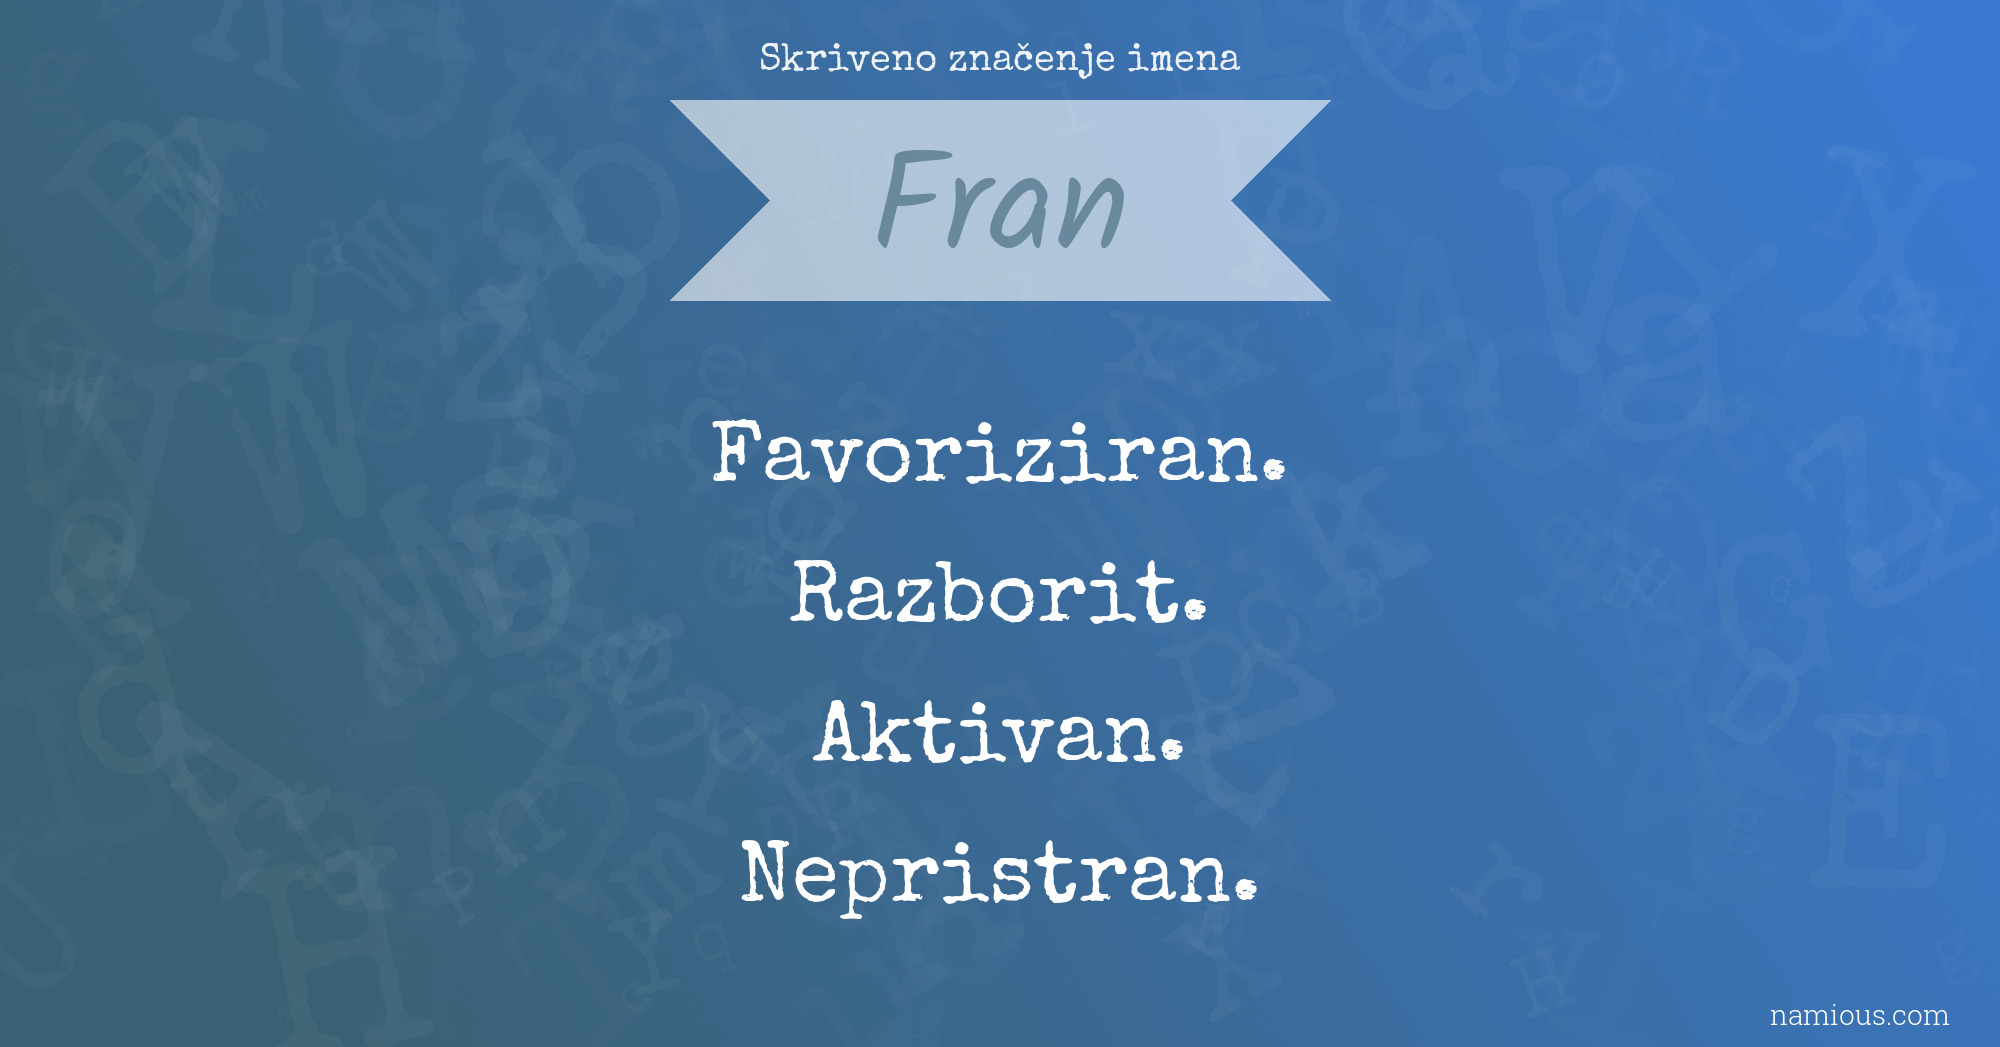 Skriveno značenje imena Fran